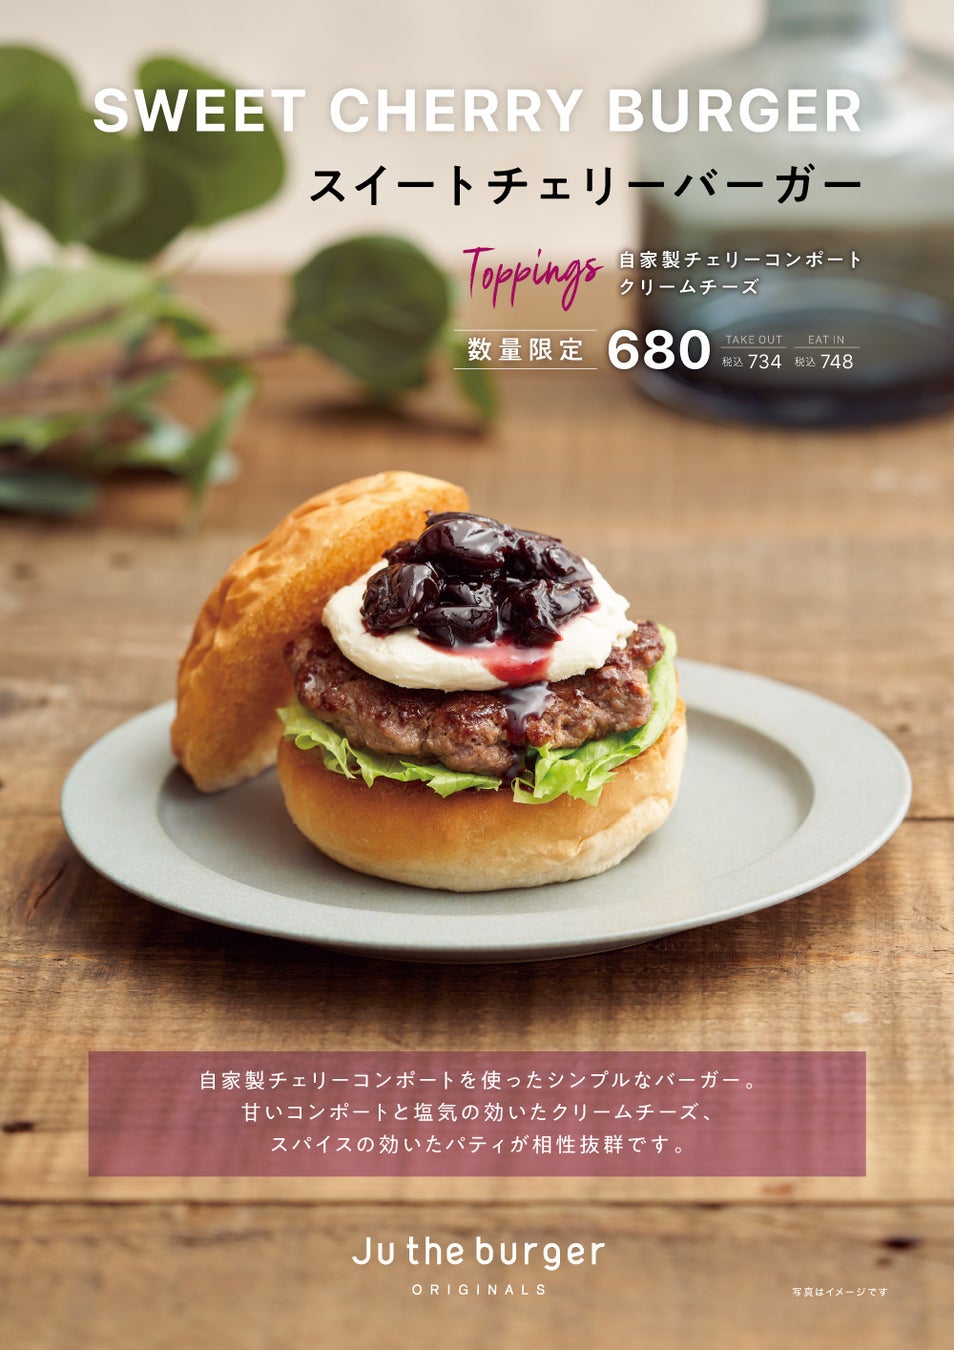 肉とスパイスの体験型飲食店「SPICE TRUNK」が渋谷に4/27グランドOPEN！約400万通りのあなただけのクラフトスパイスを。